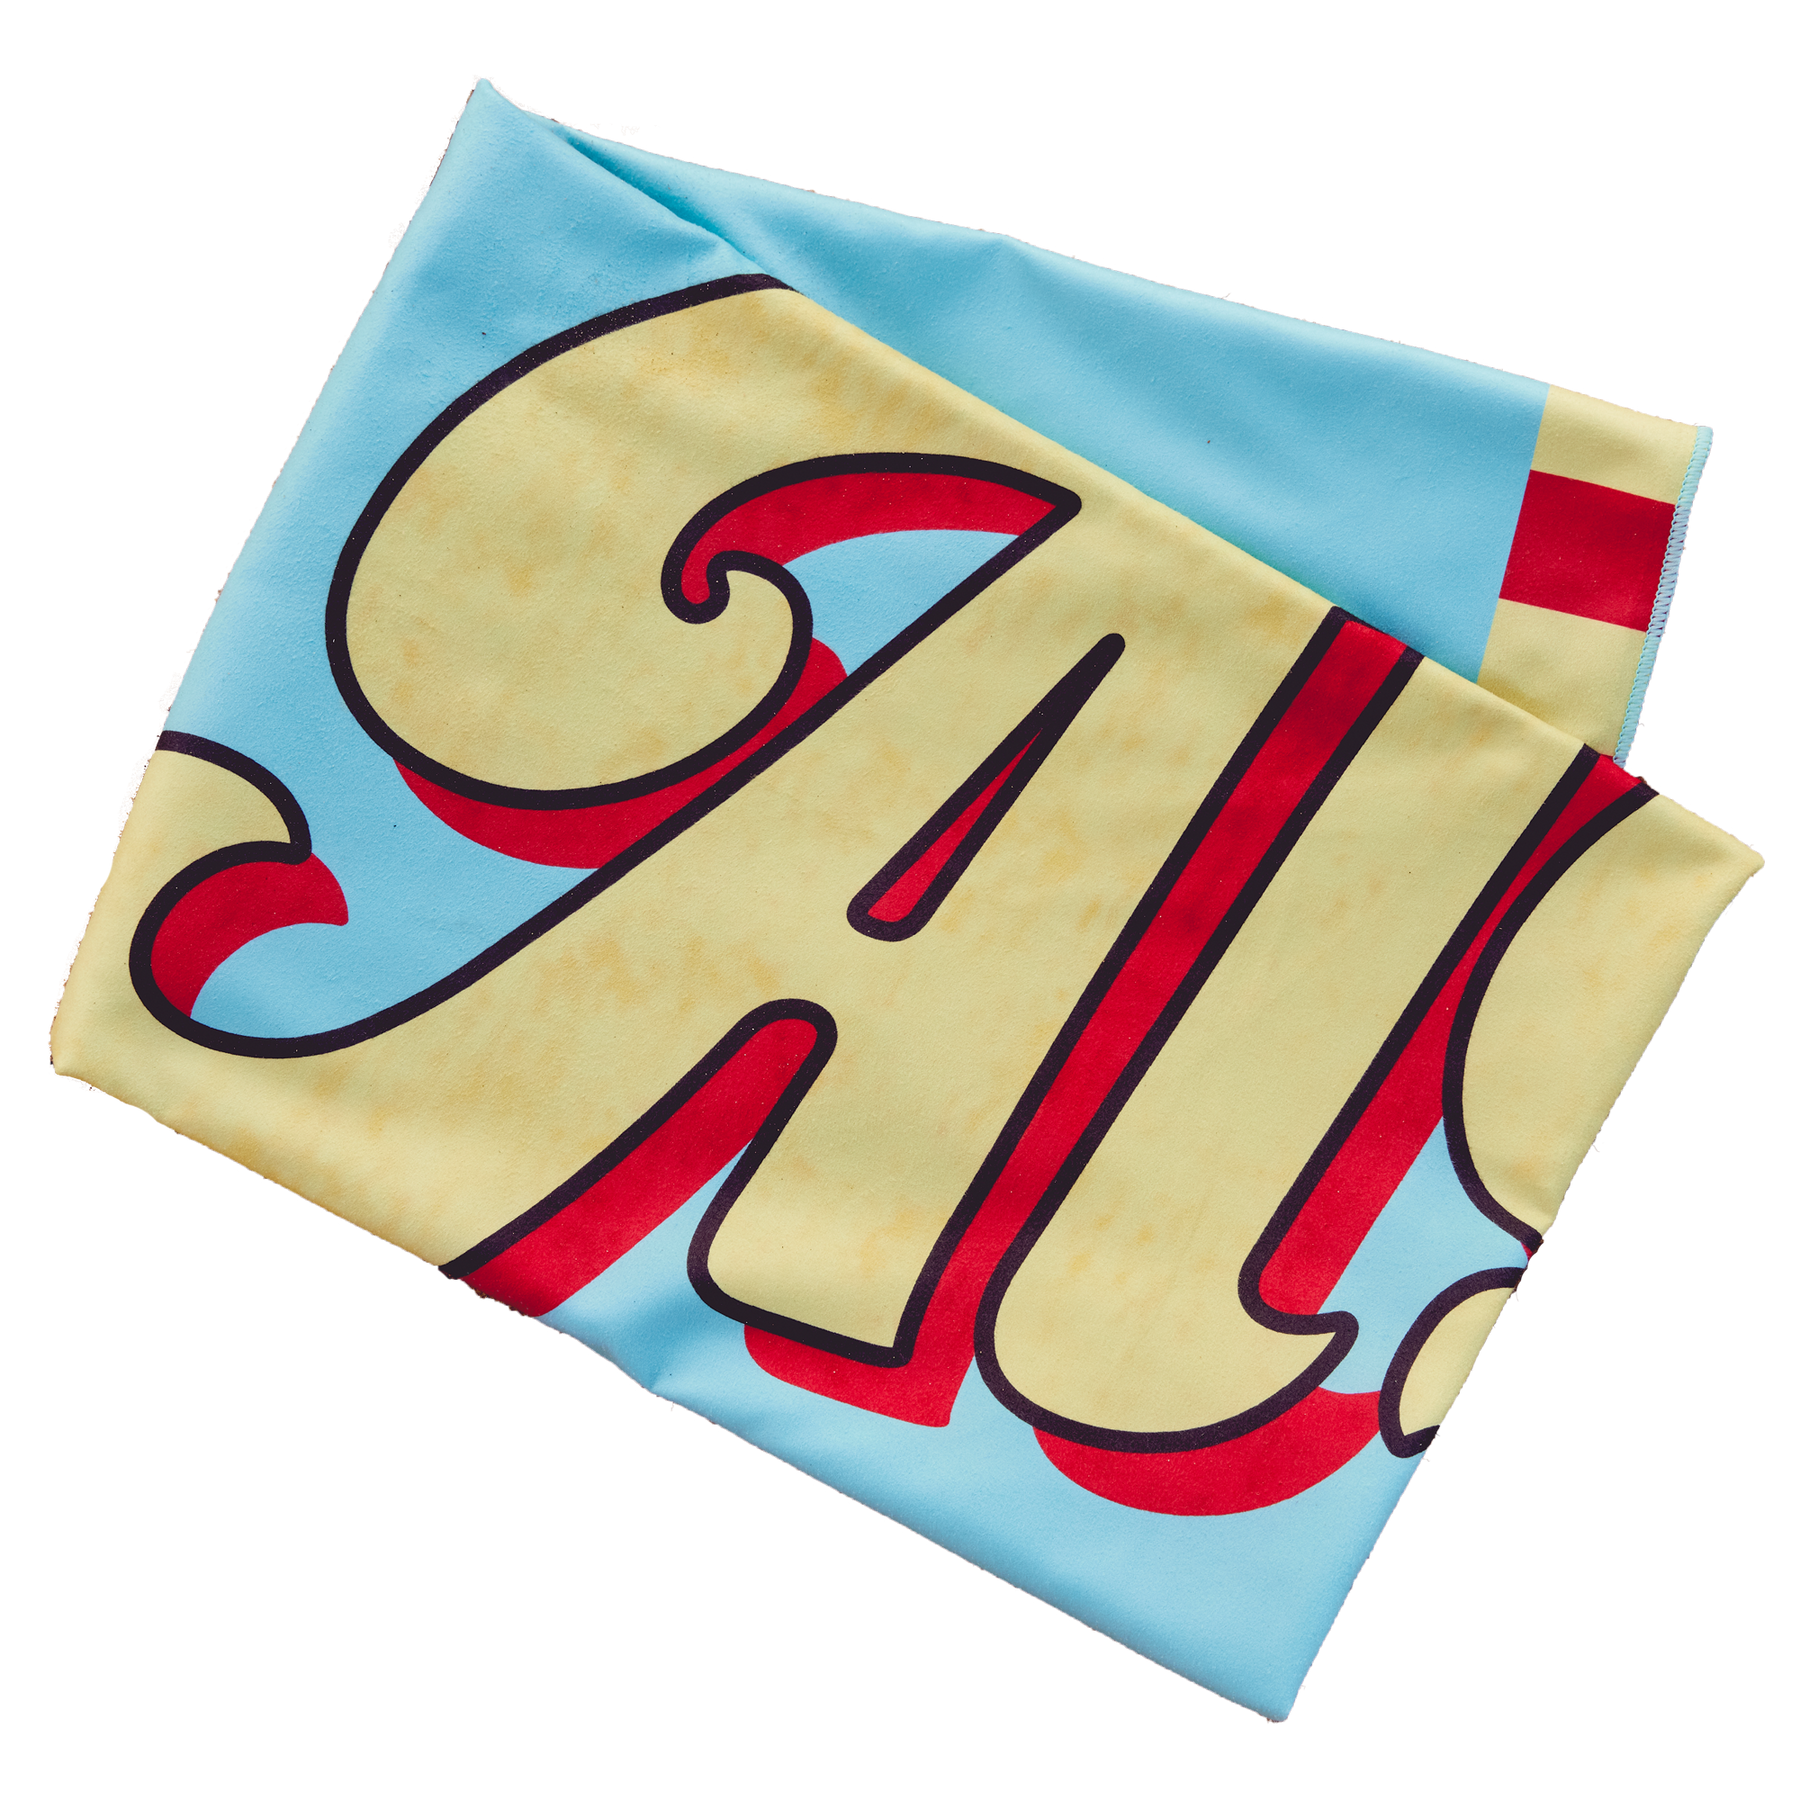 Aloha 65 Beach Towel